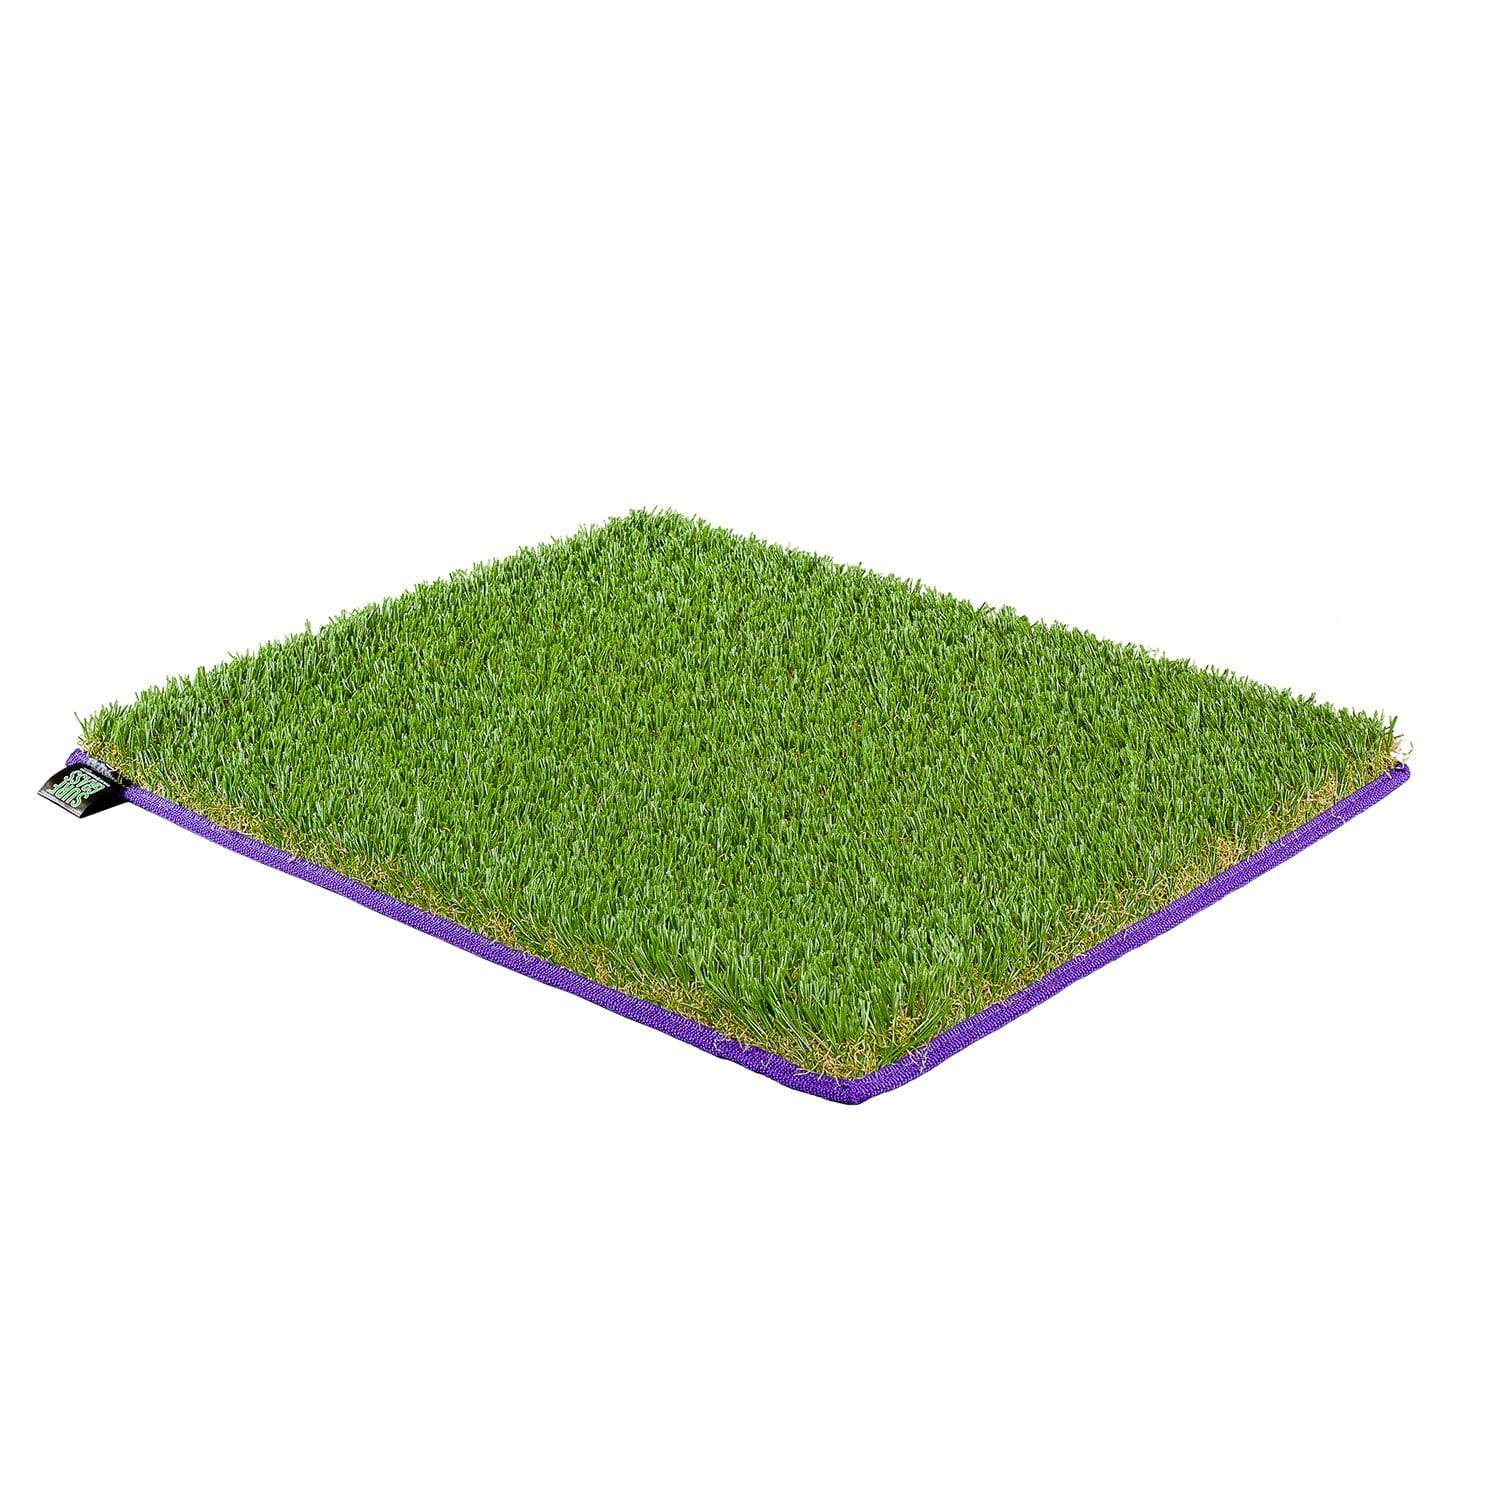 SURF GRASS MAT XL